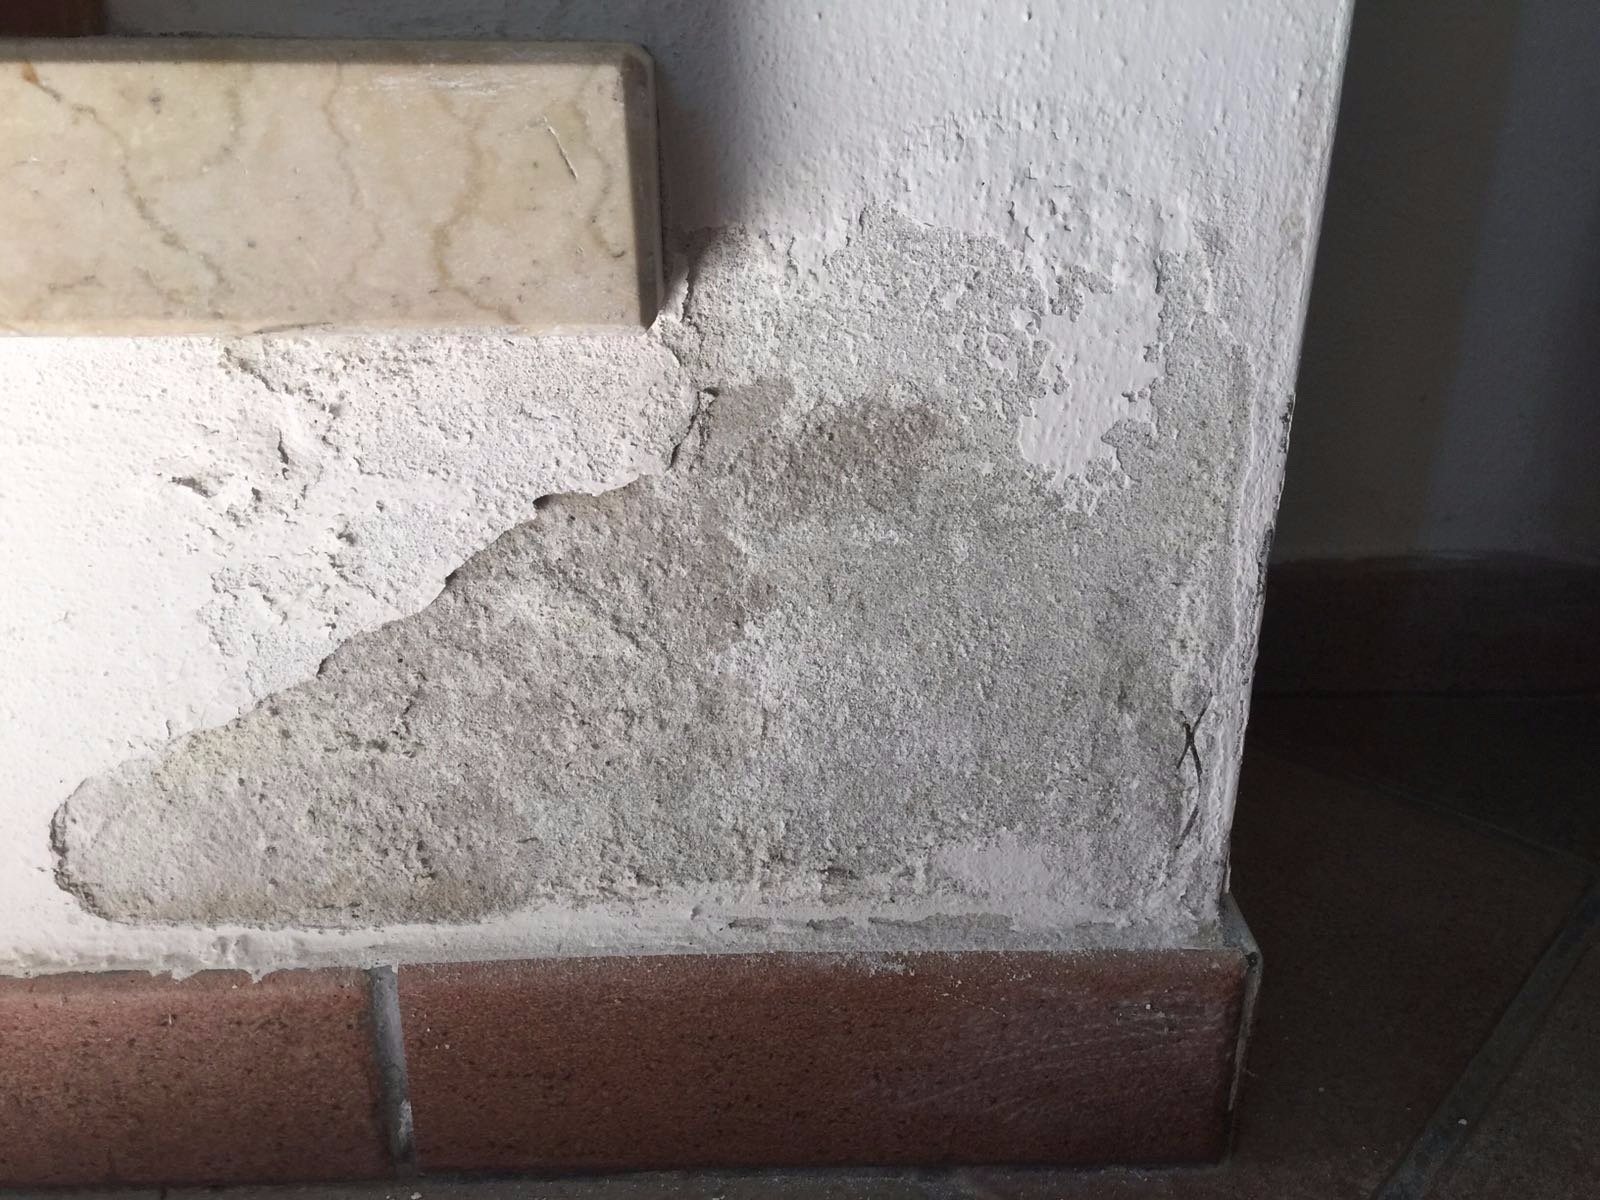 umidità risalita soluzione definitiva muri umidi muri bagnati